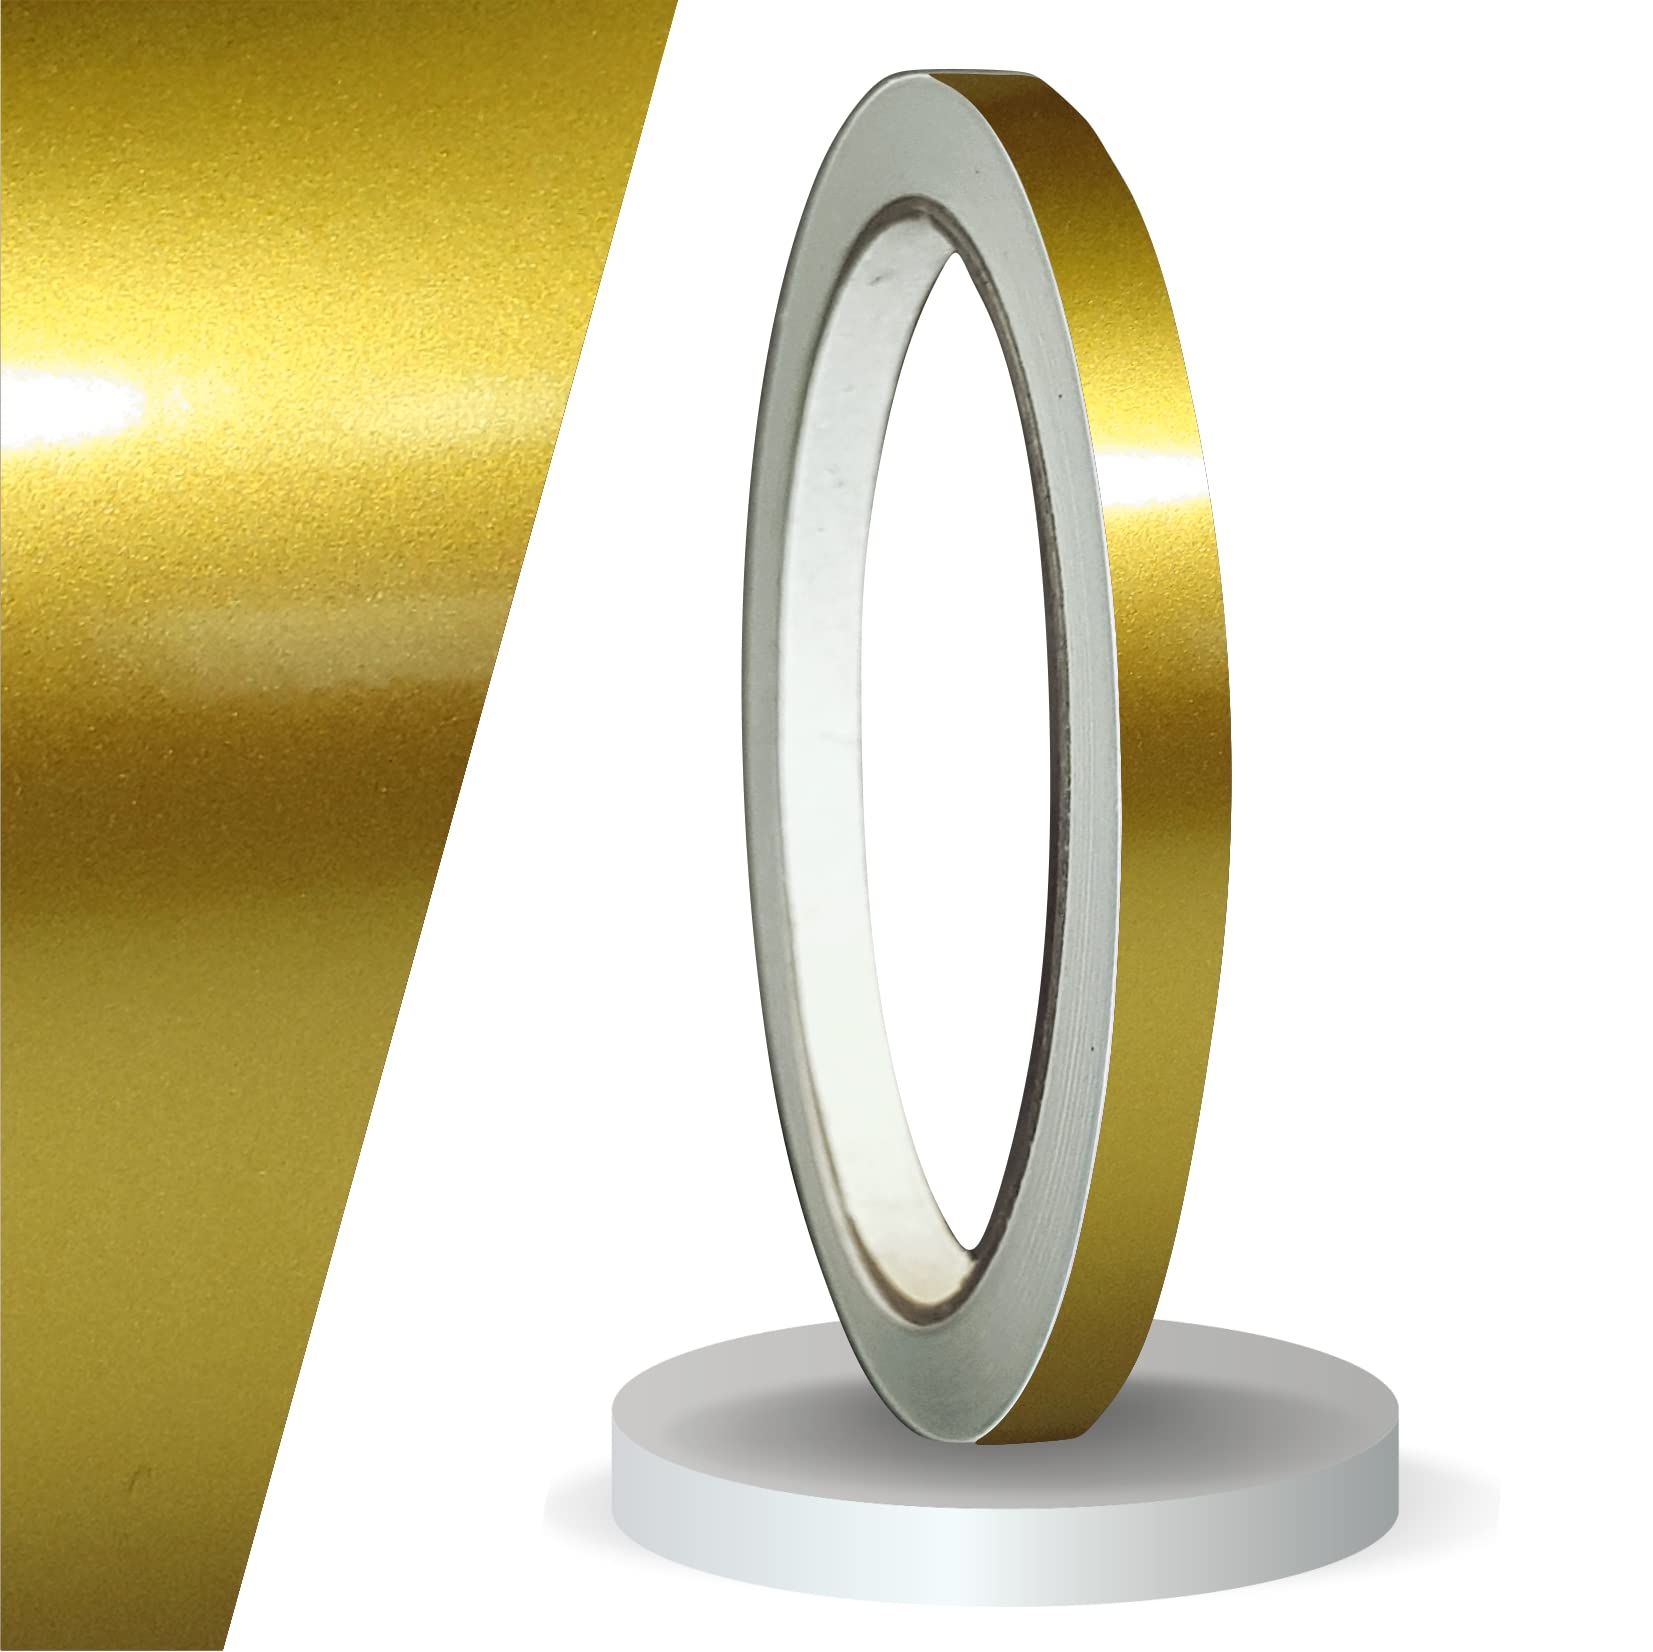 siviwonder Zierstreifen Gold metallic Glanz in in 6 mm Breite und 10 m Länge für Auto Boot Jetski Modellbau Klebeband Dekorstreifen von siviwonder